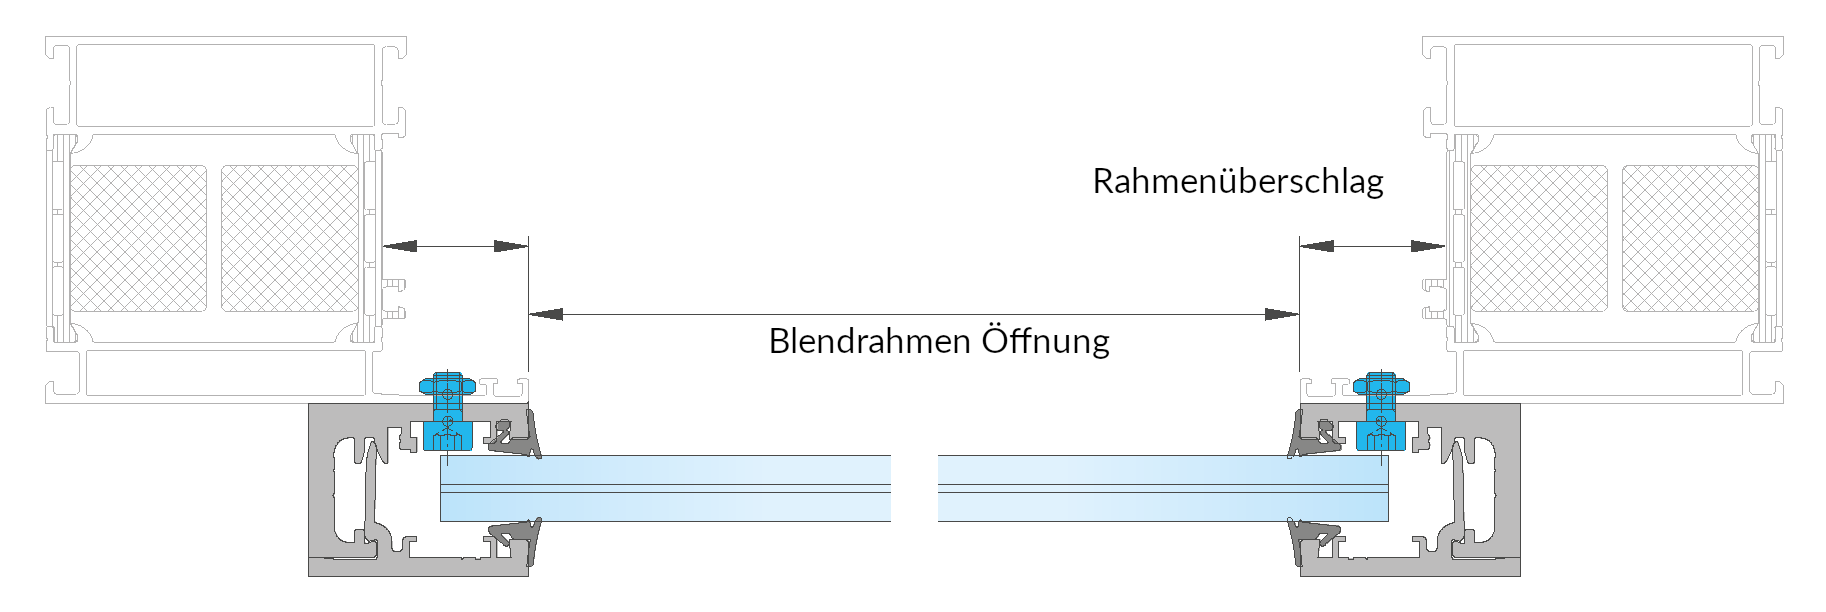 Alufenster_Rahmenueberschlag-mass